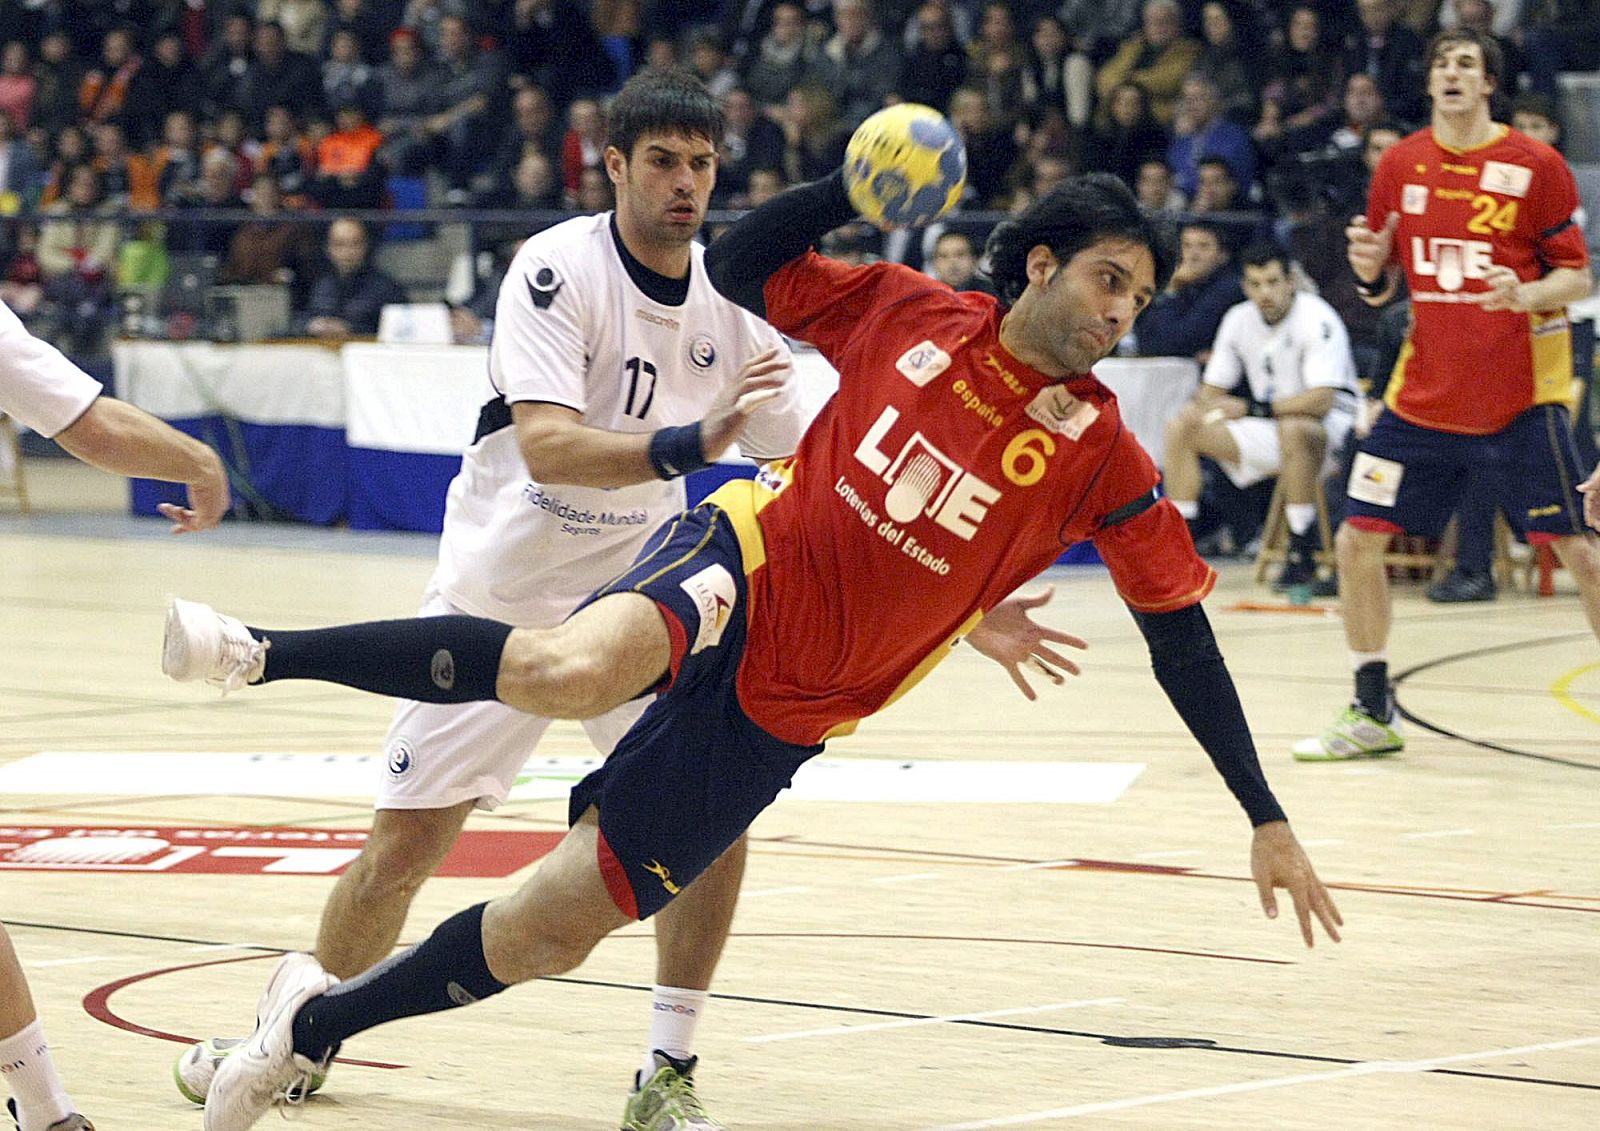 El jugador de la selección española Rubén Garabaya supera la defensa del jugador de Portugal Sousa.